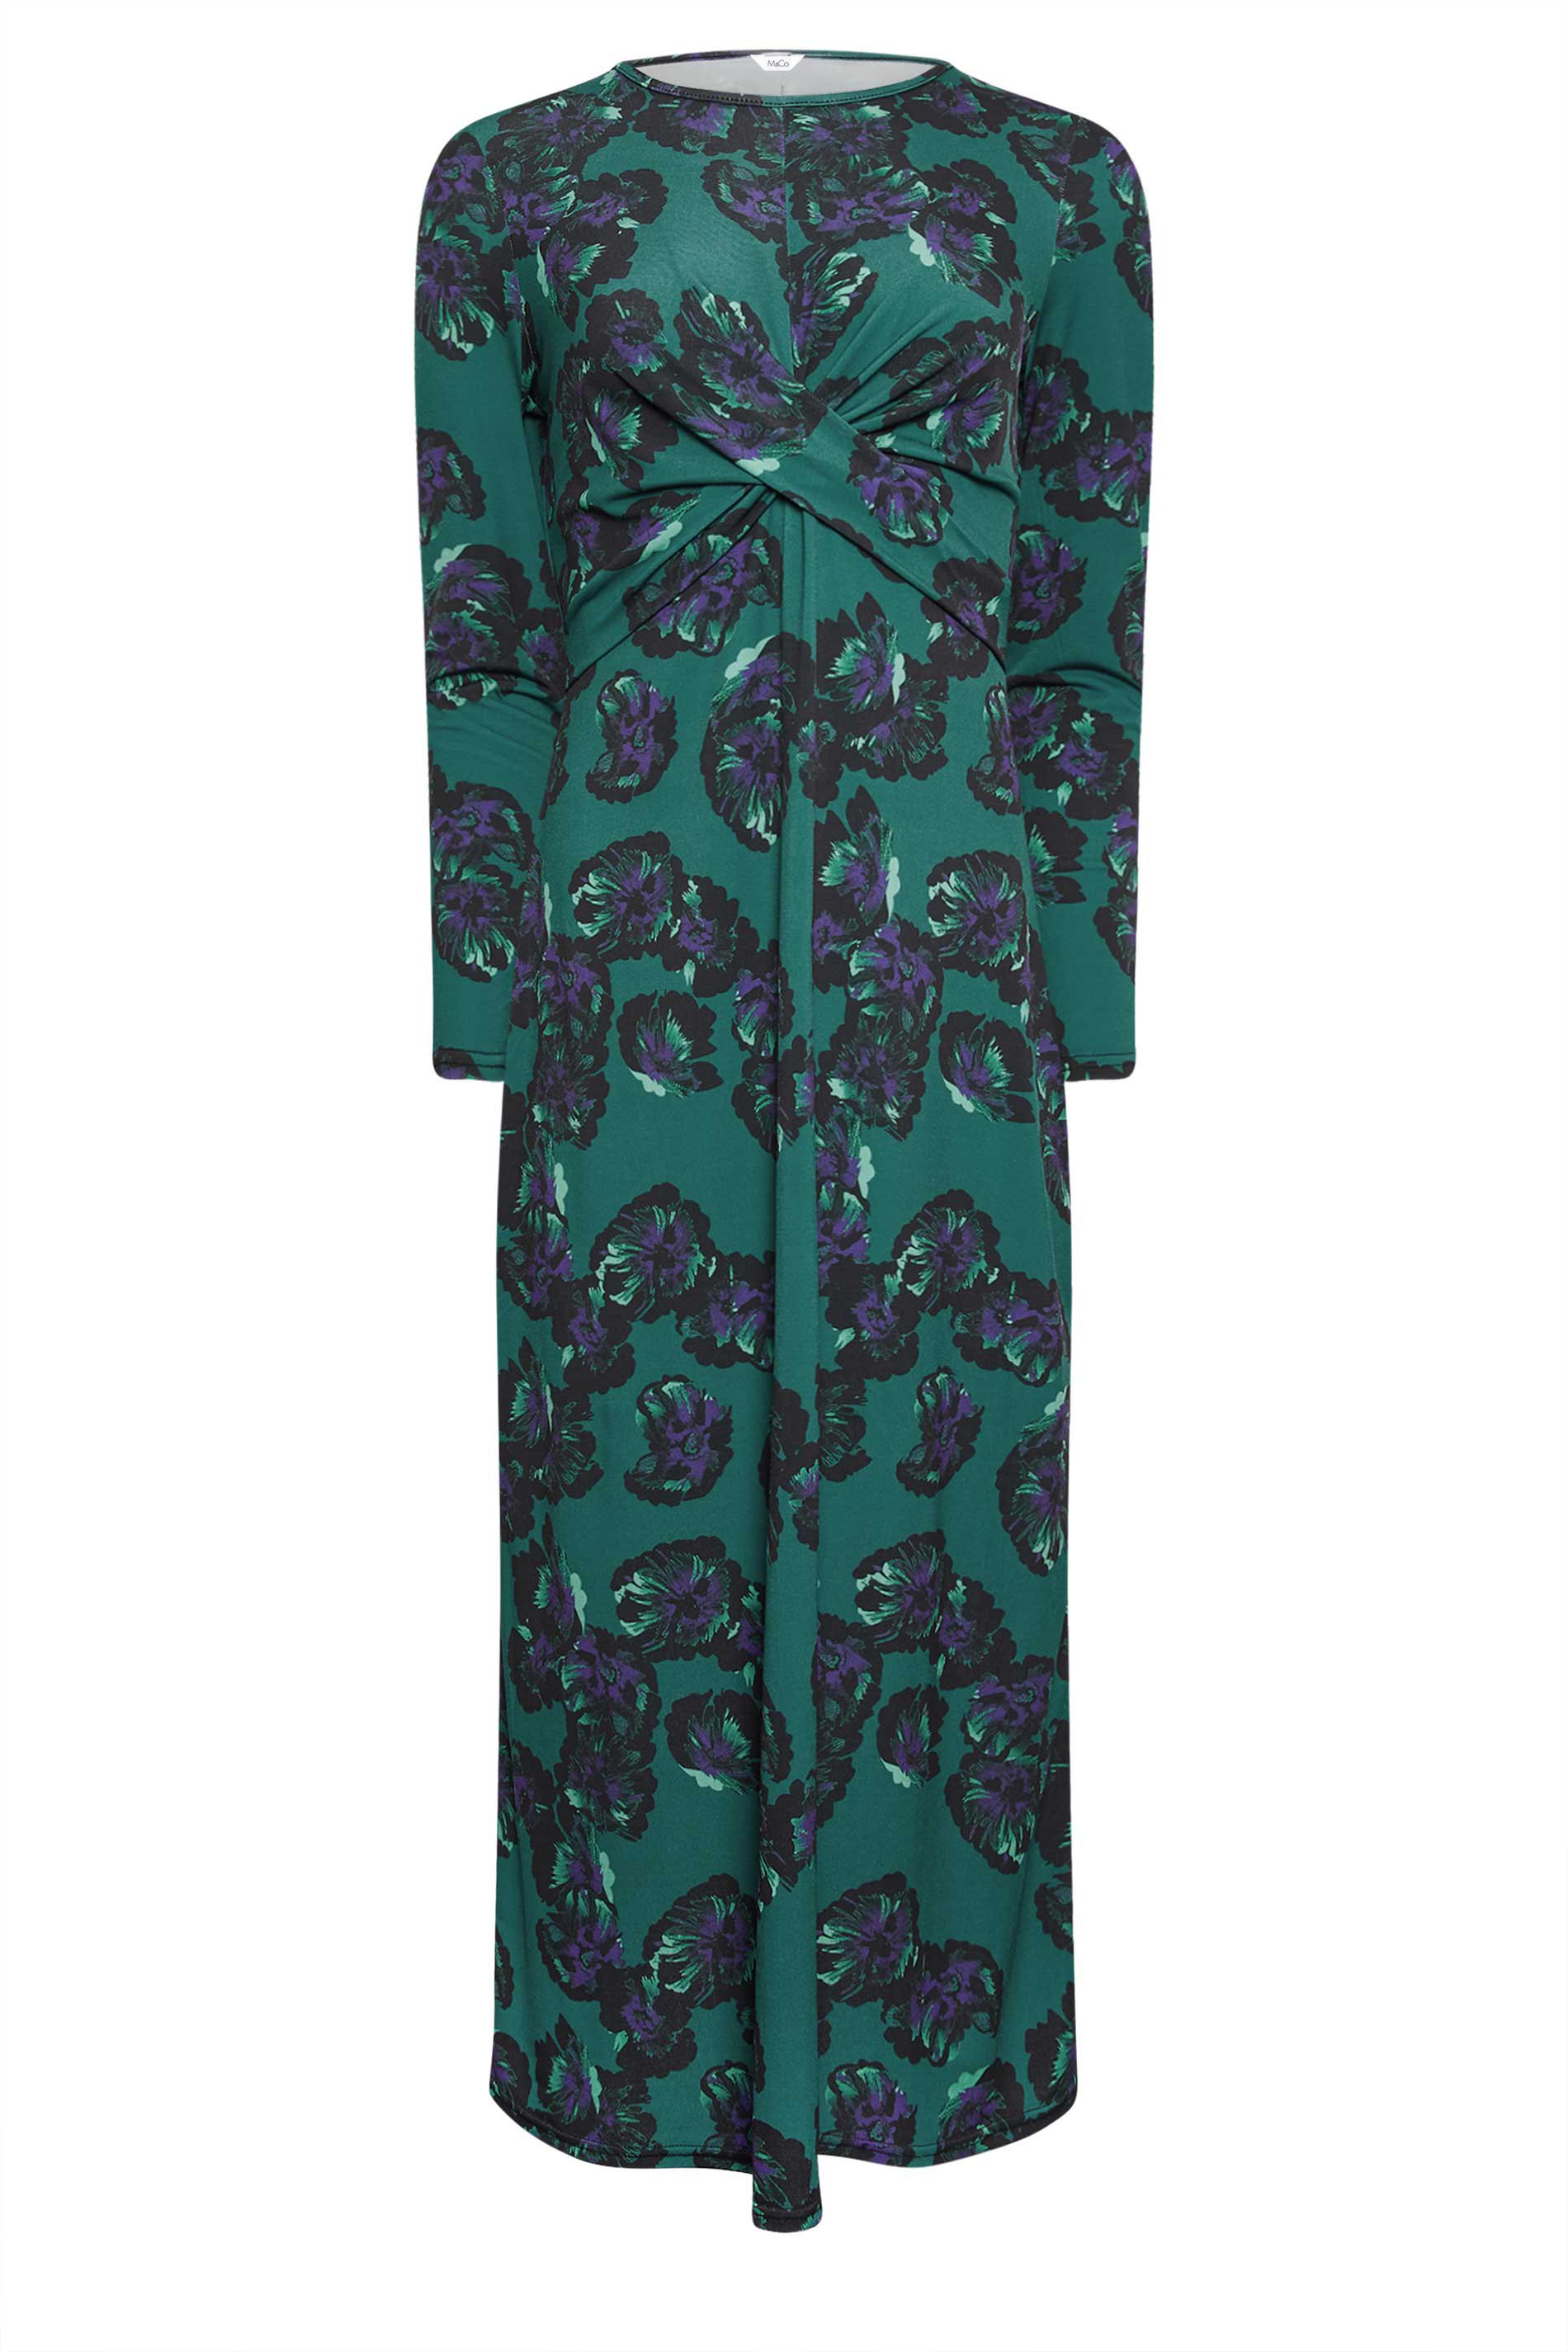 M&Co Dark Green Floral Twist Midaxi Dress | M&Co